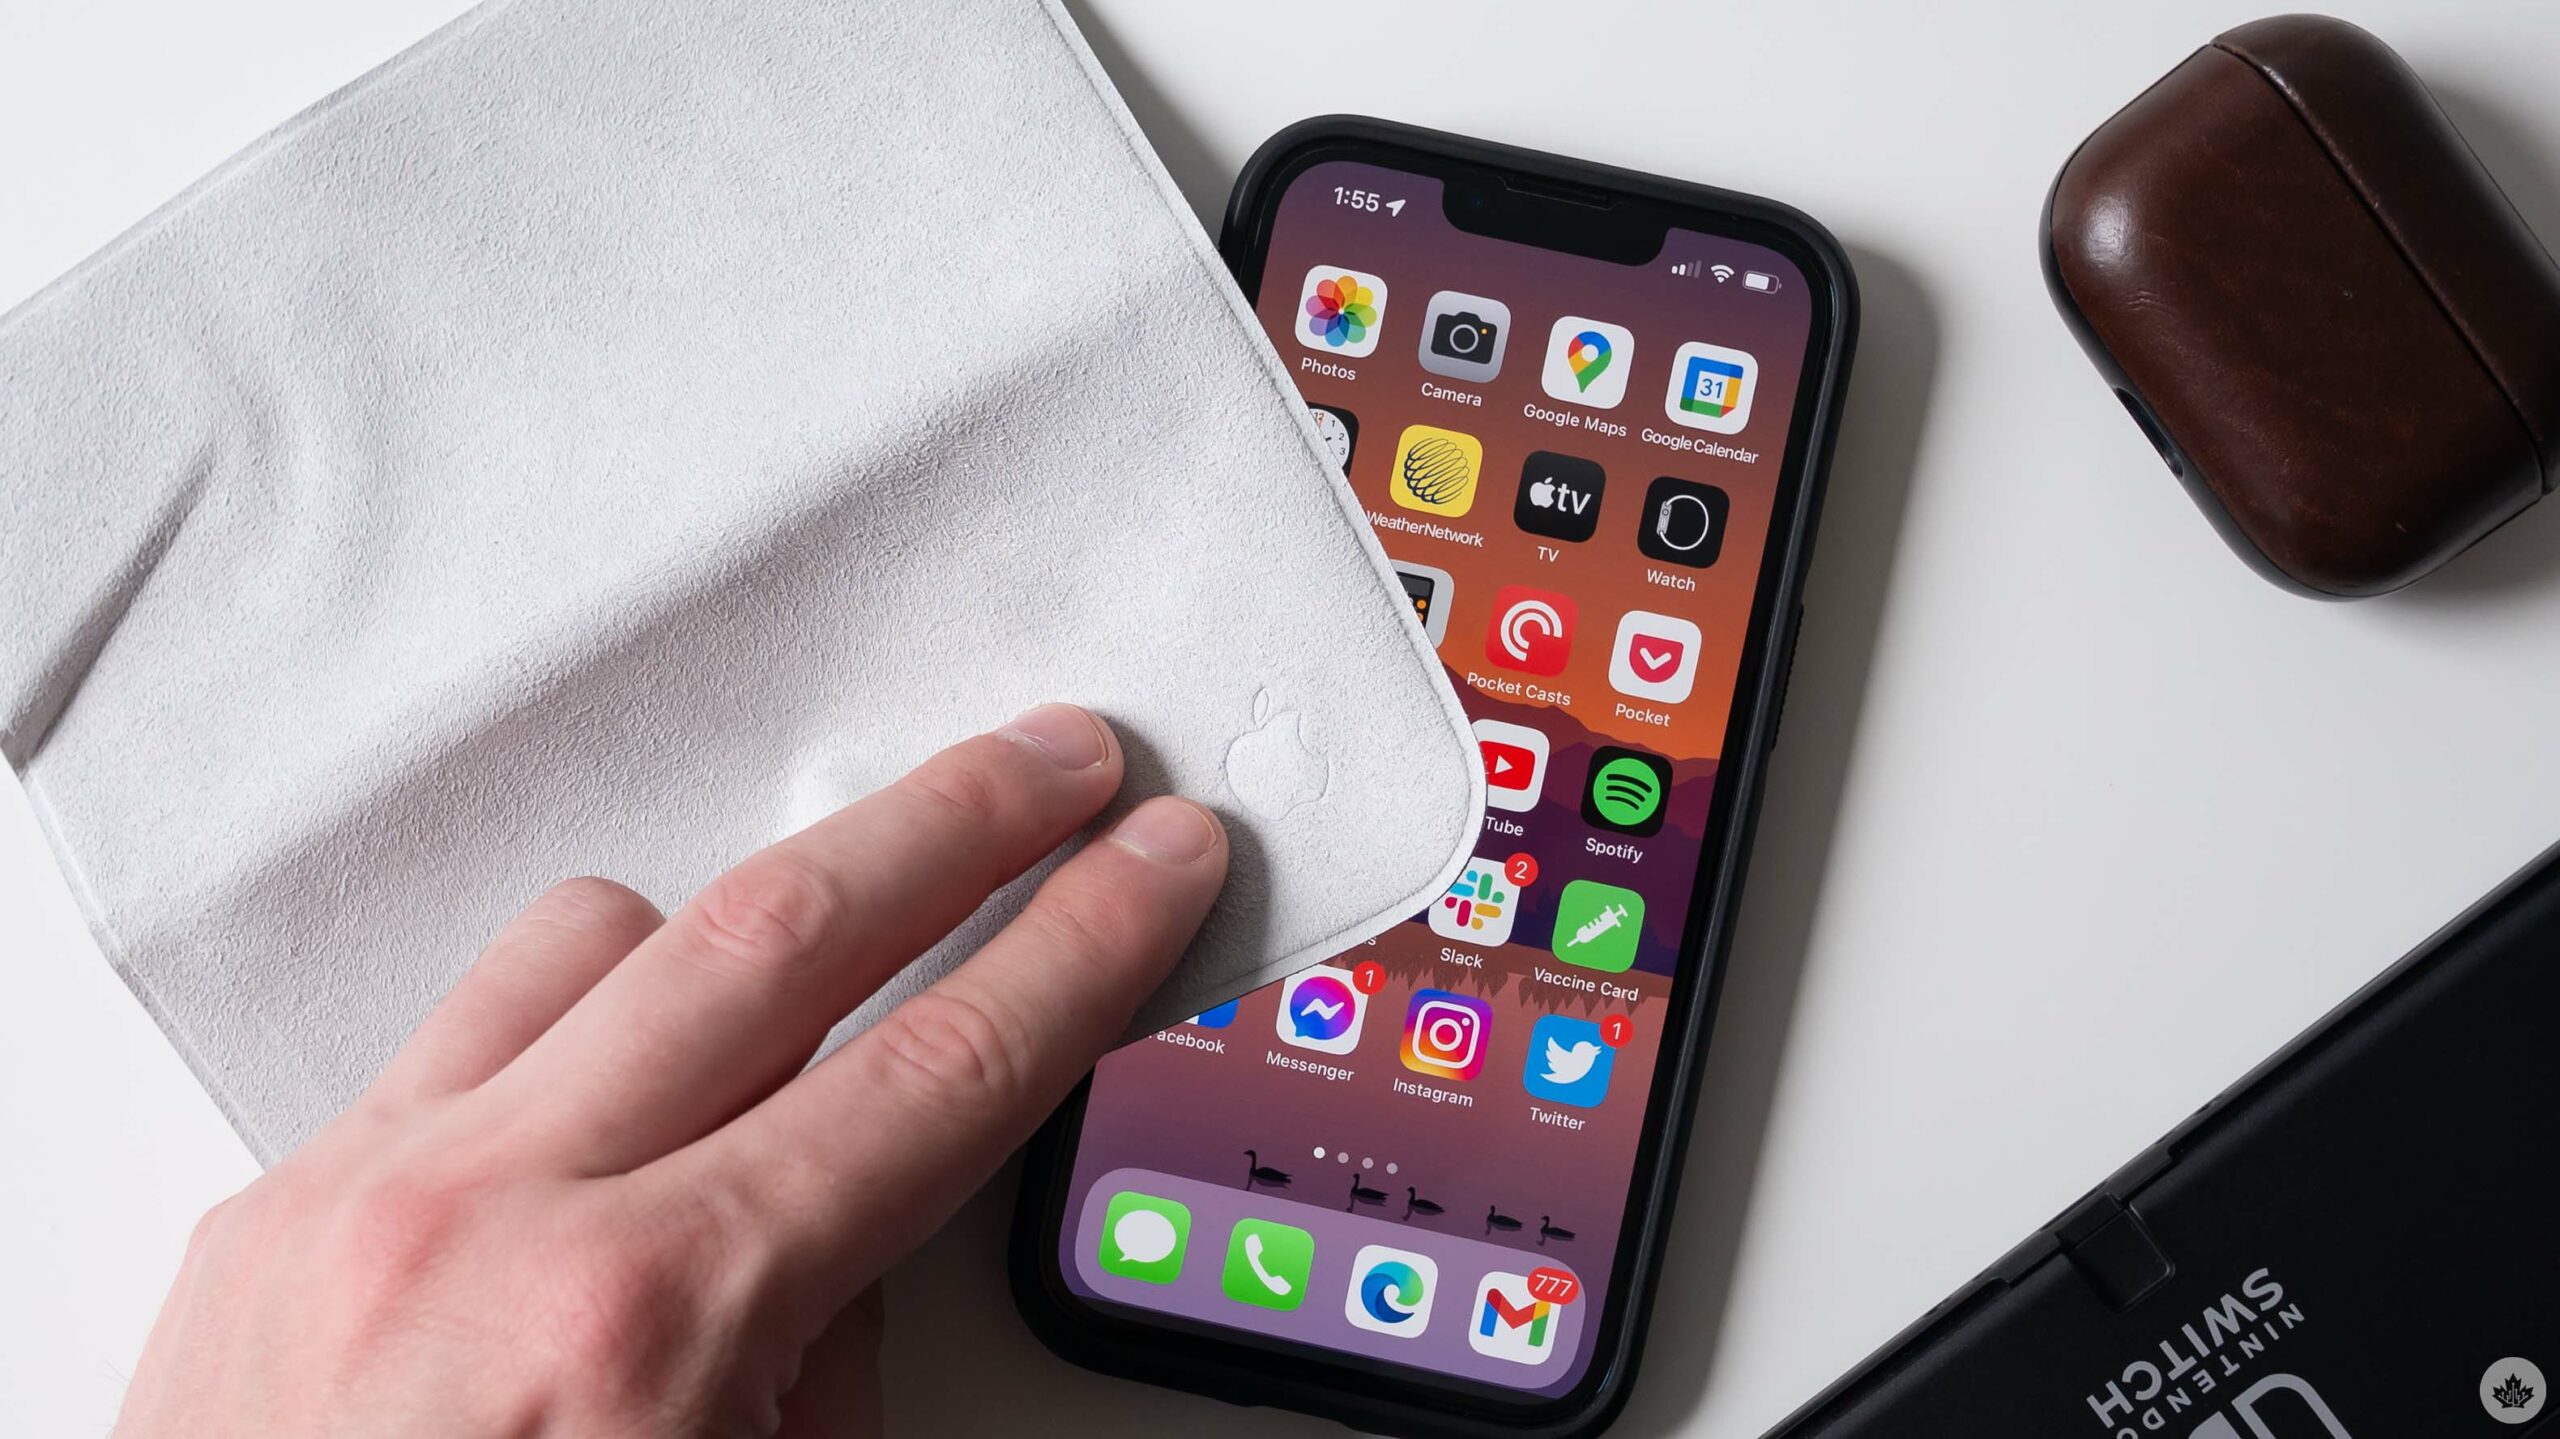 Apple's backordered Polishing Cloth gets iFixit teardown – MobileSyrup